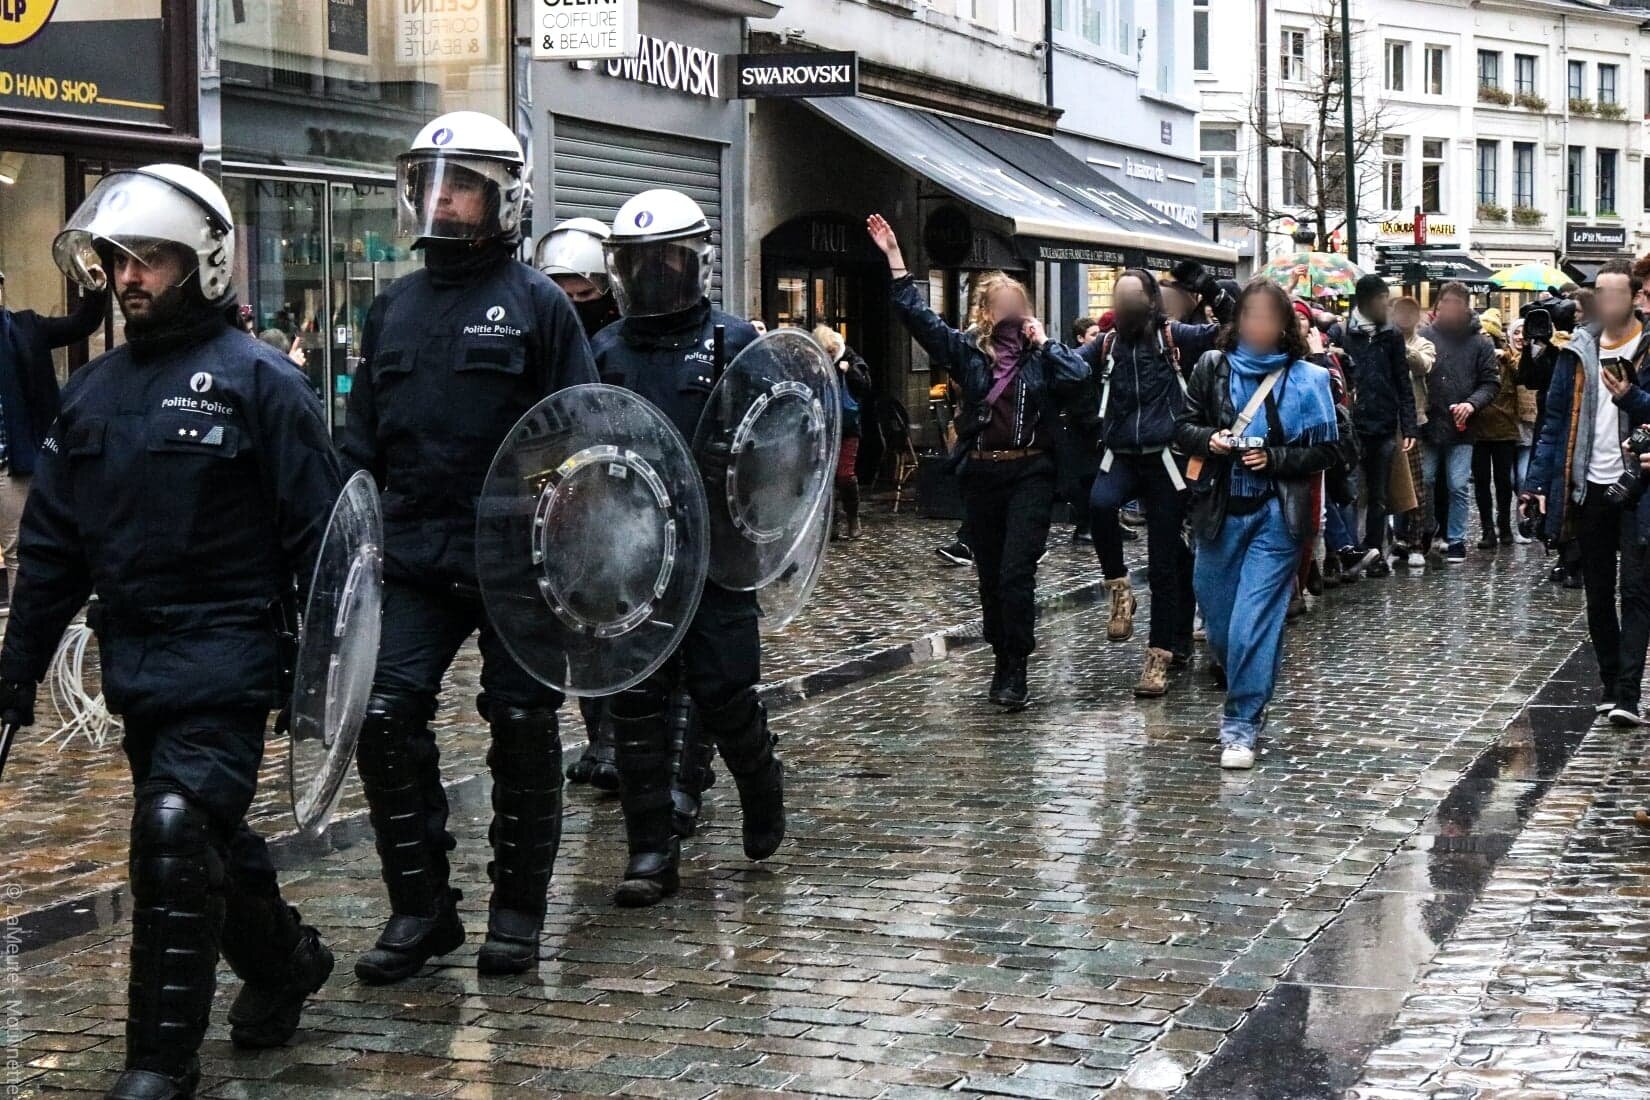   Les policiers errent dans le centre-ville de Bruxelles à la recherche des responsables des manifestations sauvages qui se sont déclarées plus tôt. Ils sont rapidement suivis par des manifestantes qui chantent et font la chenille derrière eux. Certa